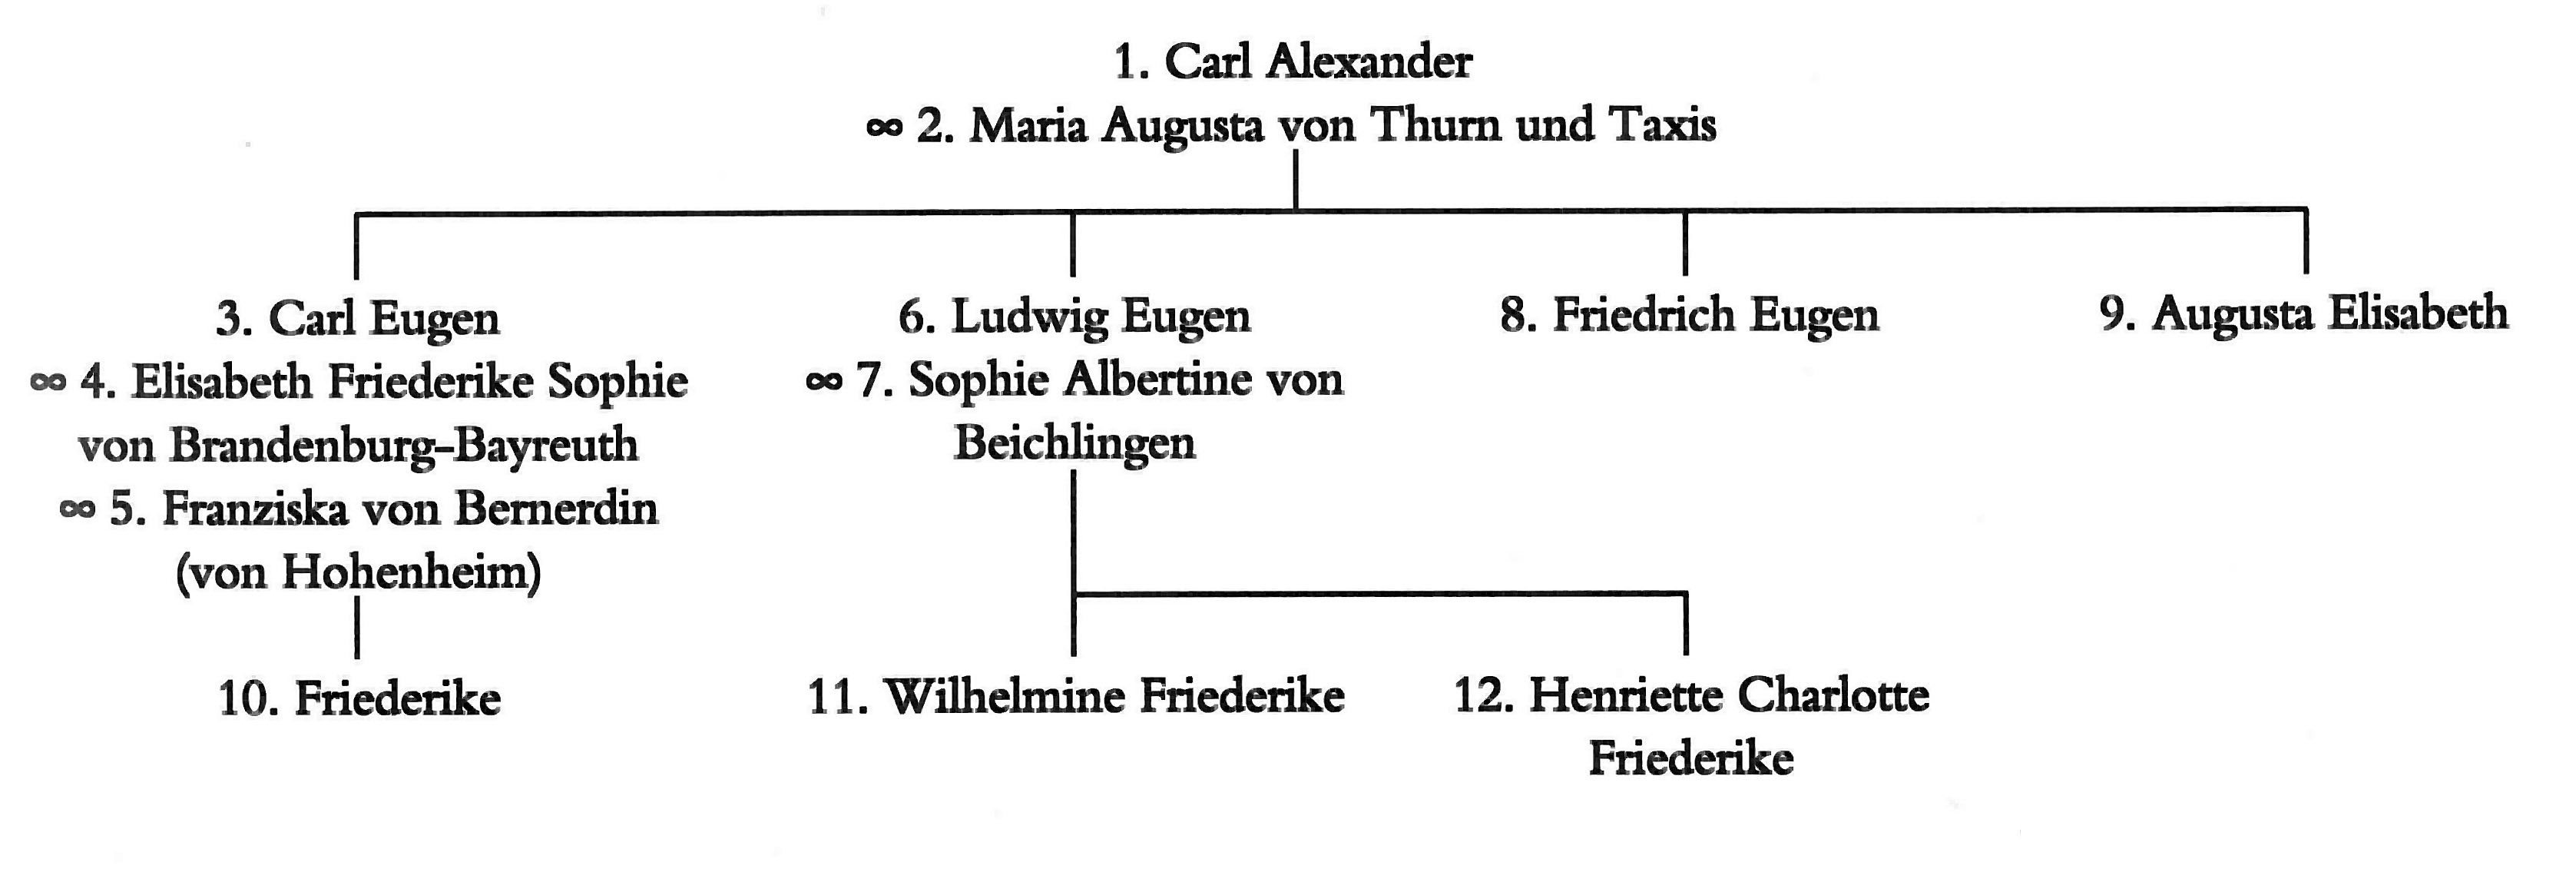 Nach dem Tod Eberhard Ludwigs folgte sein Cousin Carl Alexander als regierender Herzog von Württemberg. Carl Alexander konvertierte 1712 zum katholischen Glauben. 